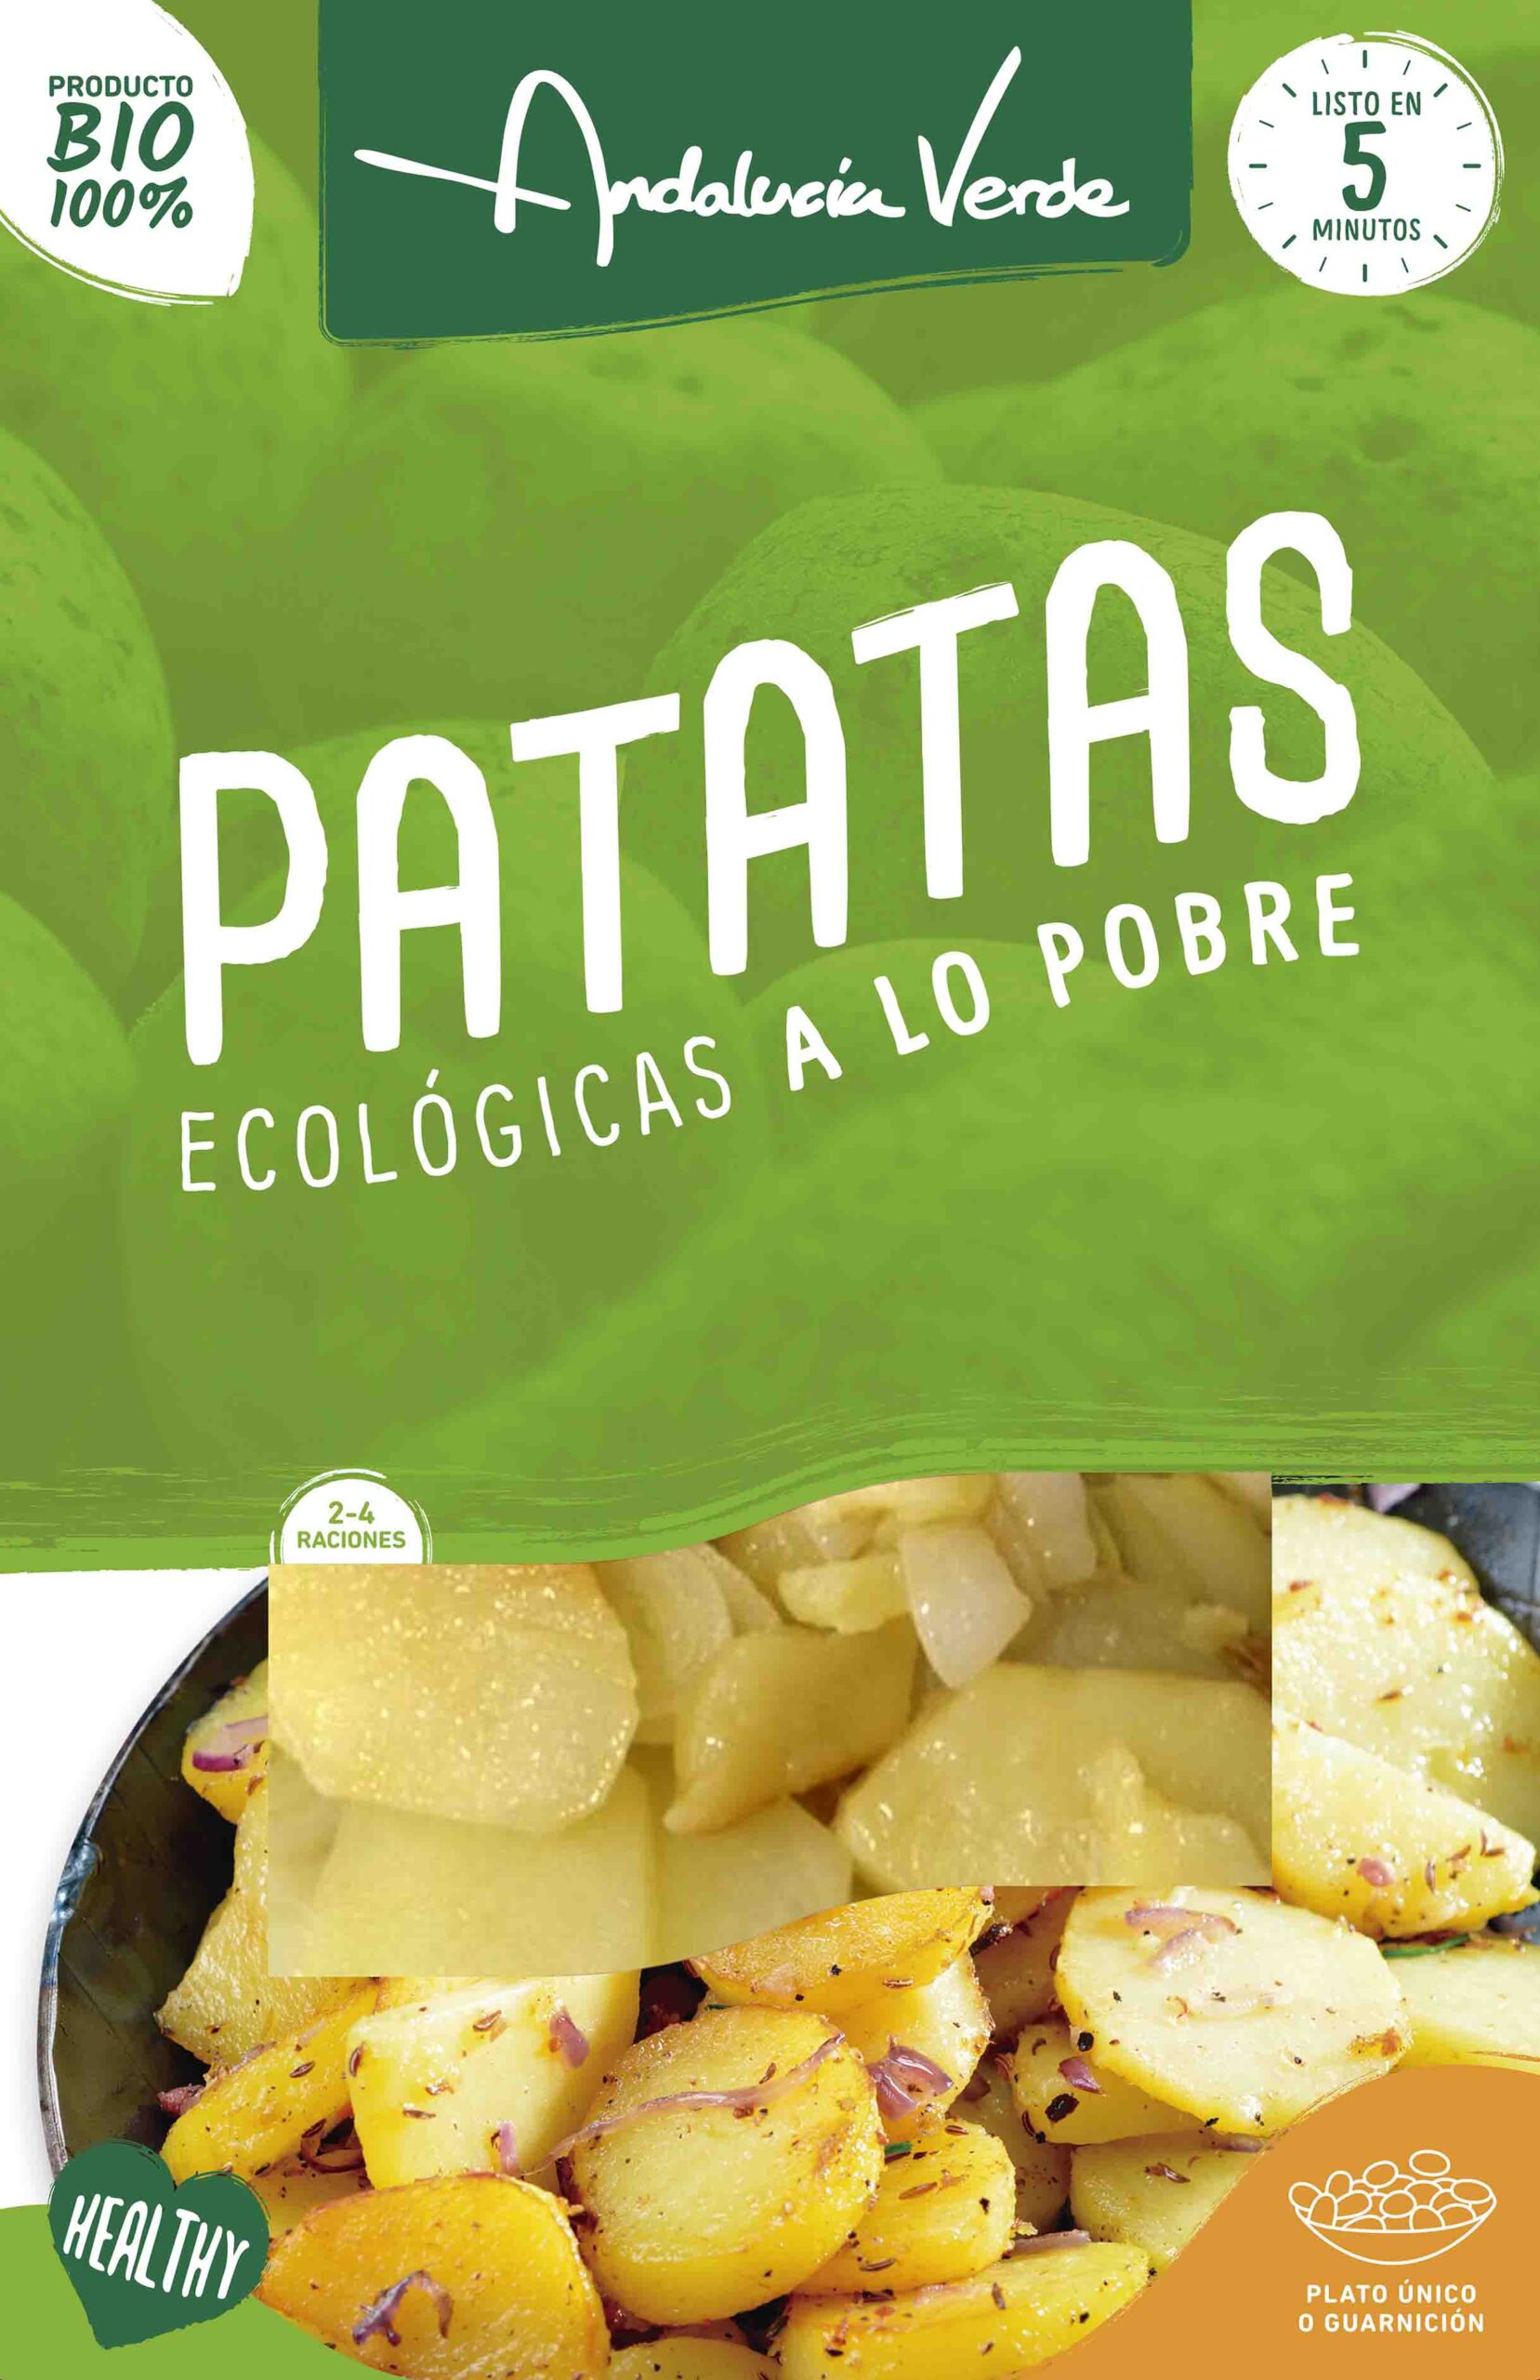 Patatas ecológicas a lo Pobre 500gr